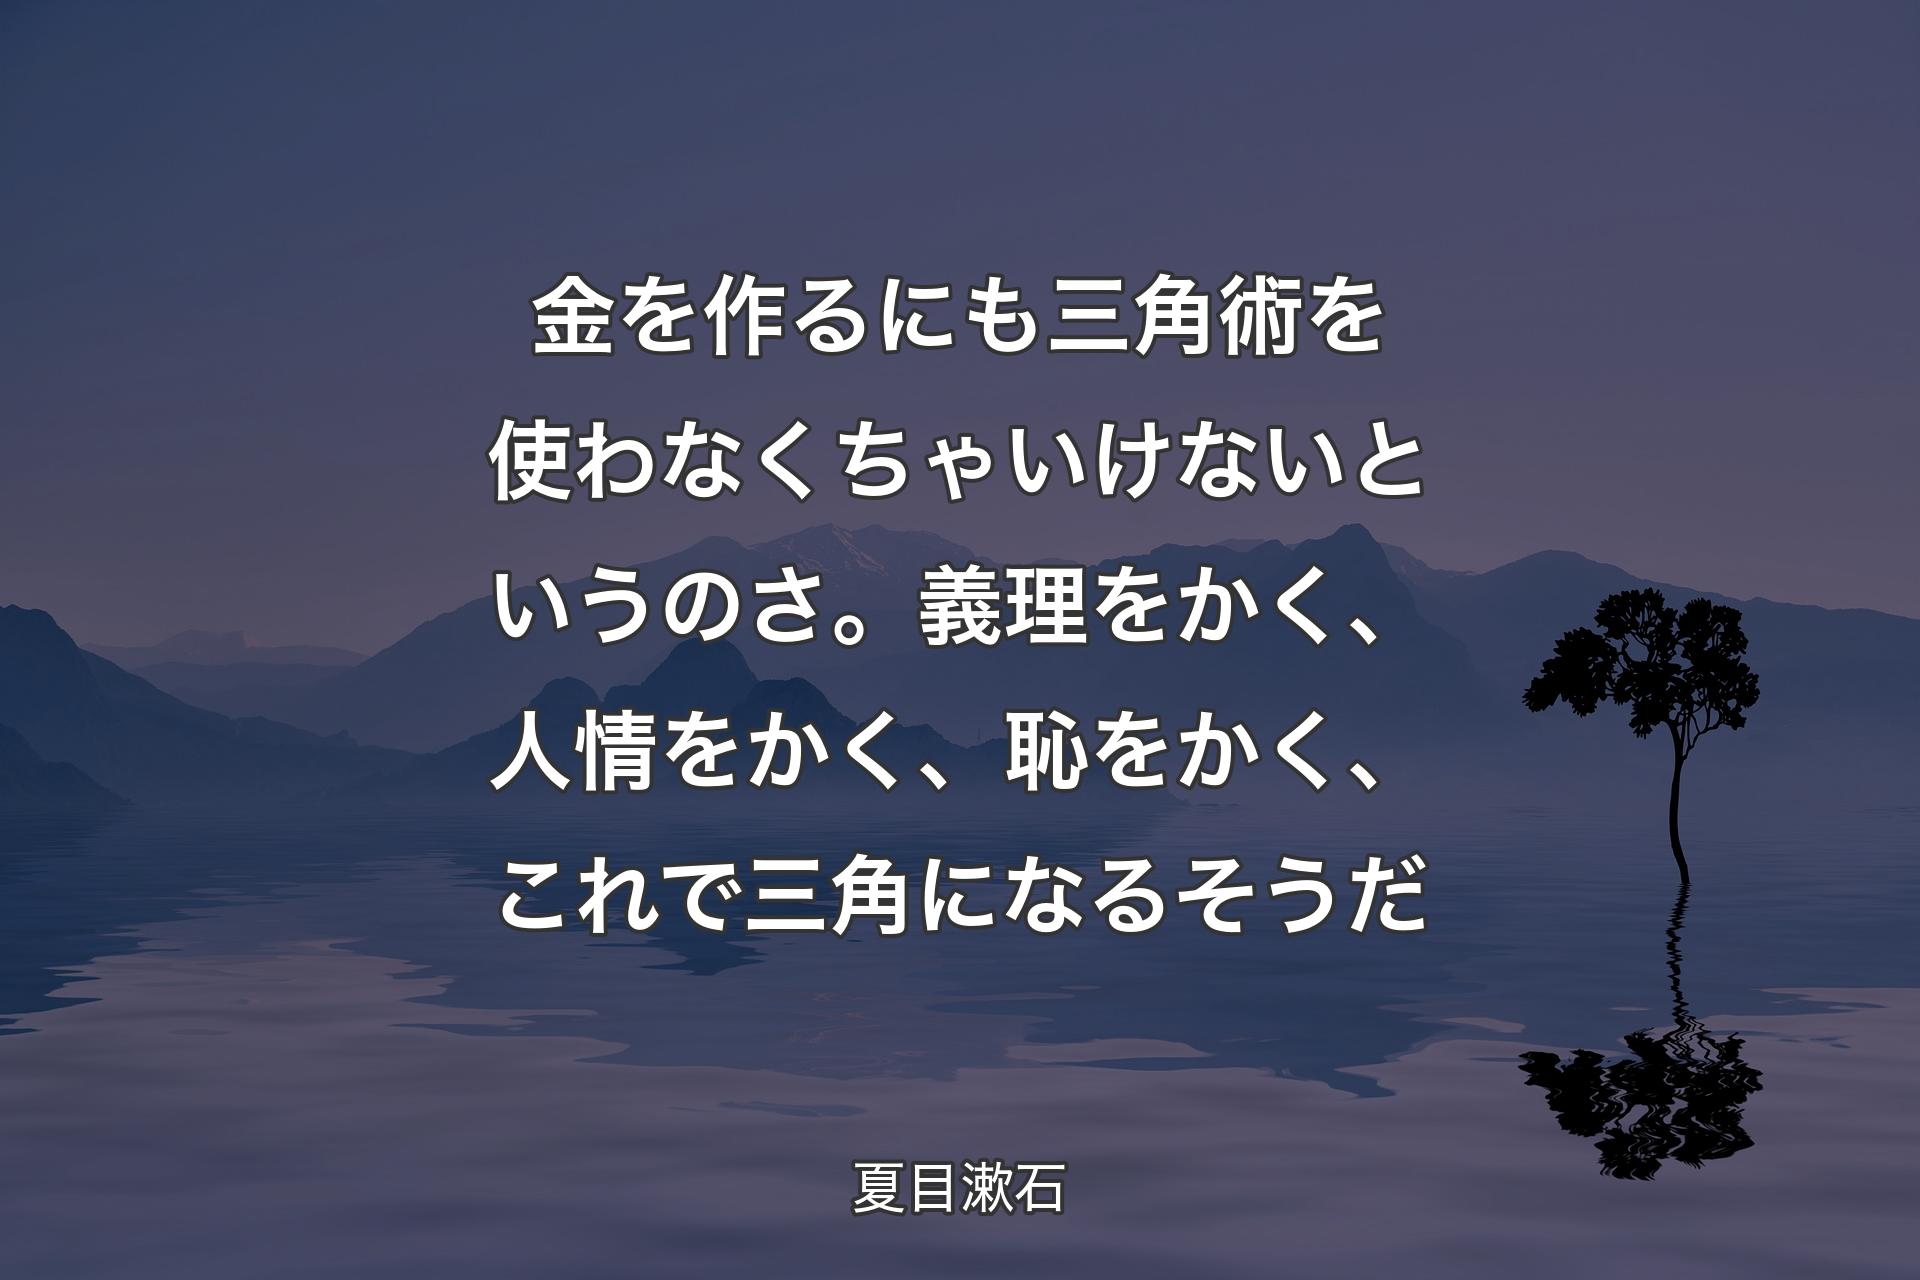 金を作るにも三角術を使わなくちゃいけないというのさ。義理をかく、人情をかく、恥をかく、これで三角になるそうだ - 夏目漱石